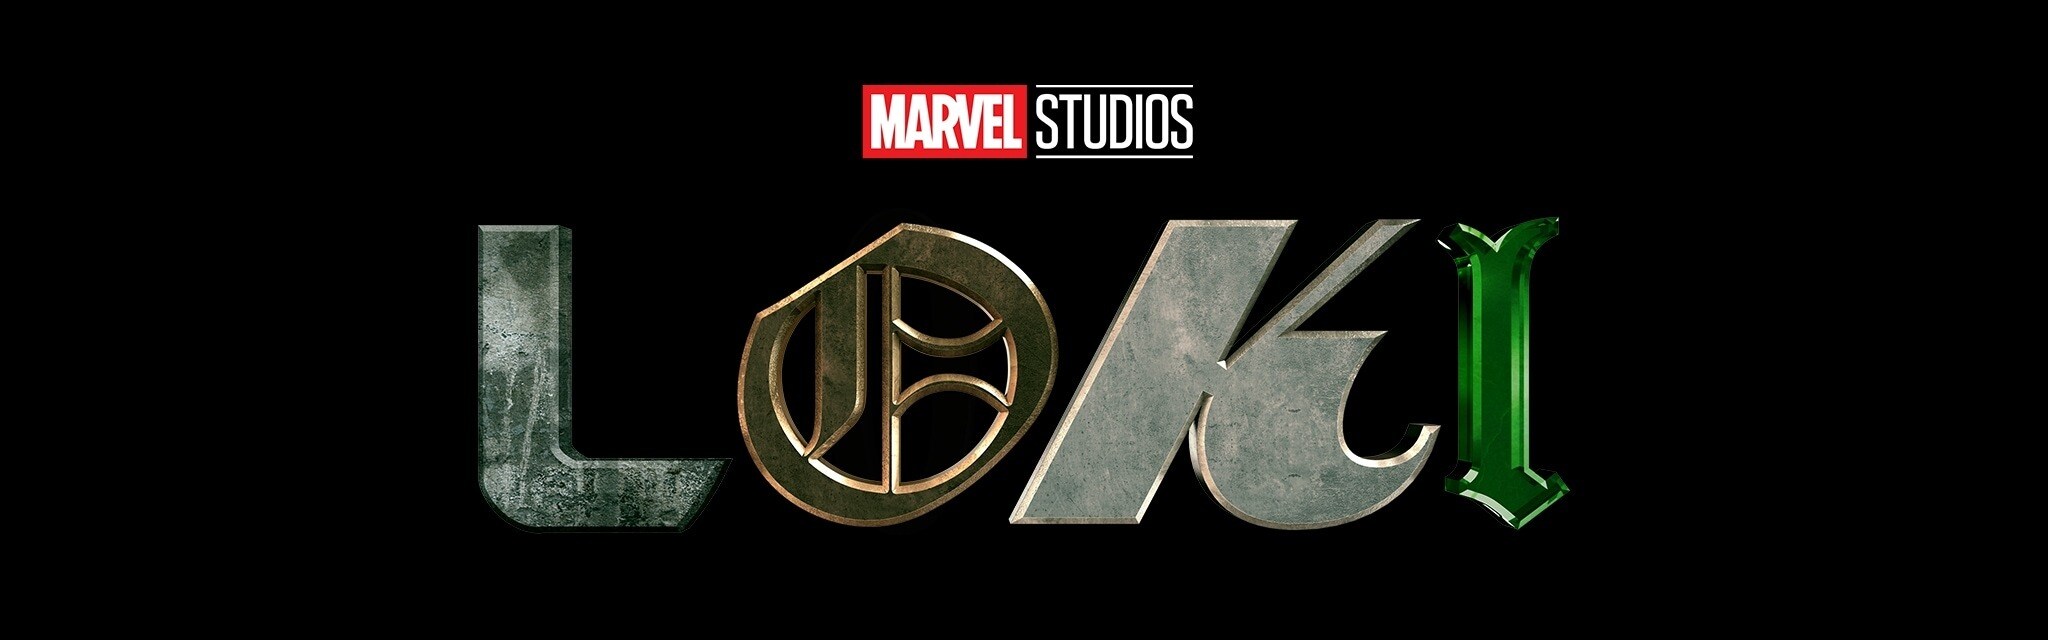 Loki | Estreno 9 de junio | Solo en Disney+